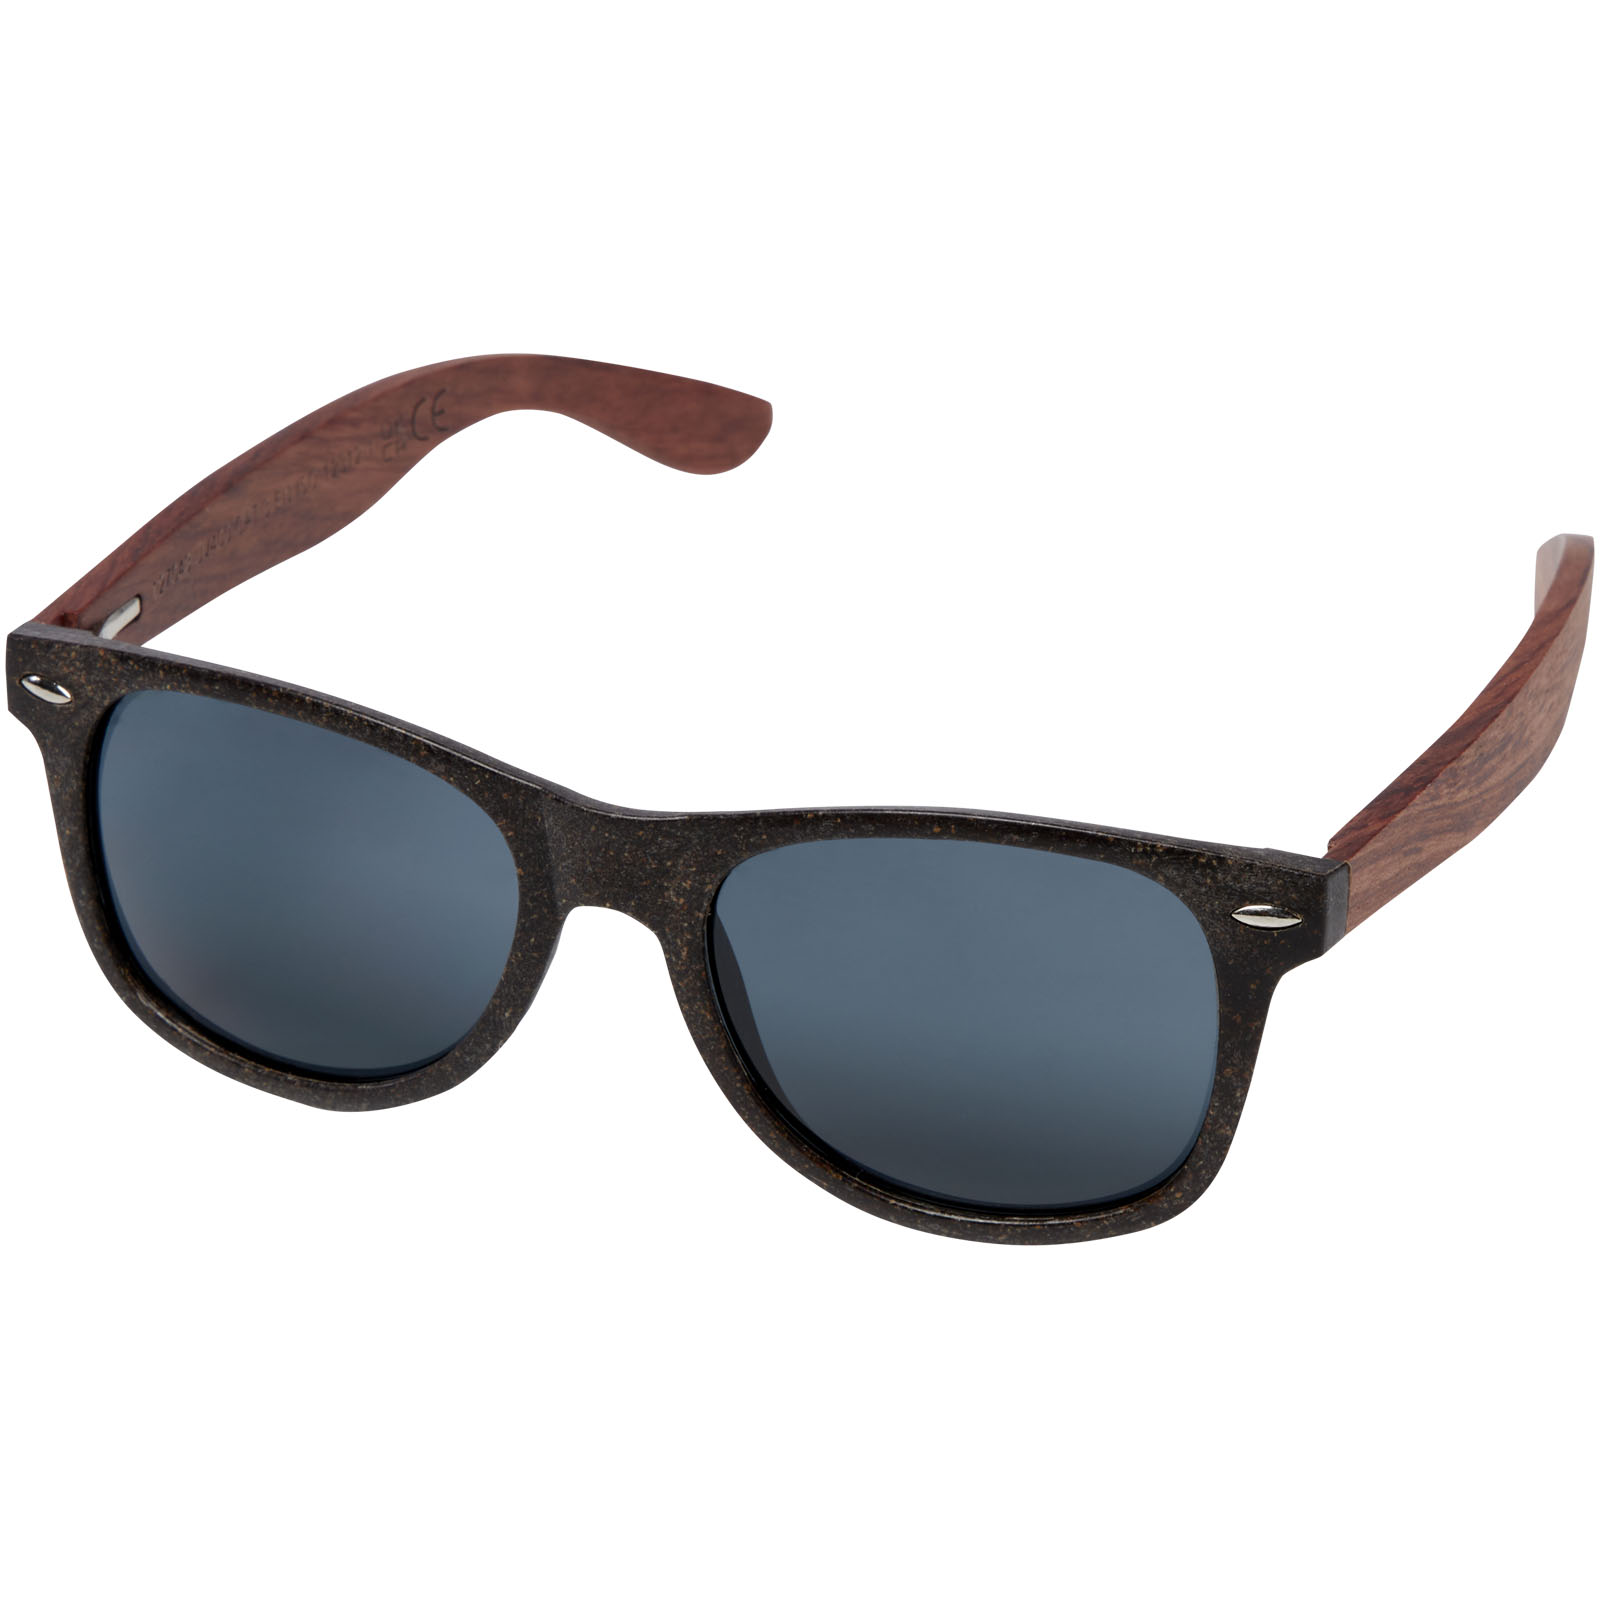 Sunglasses - Lunettes de soleil Kafo